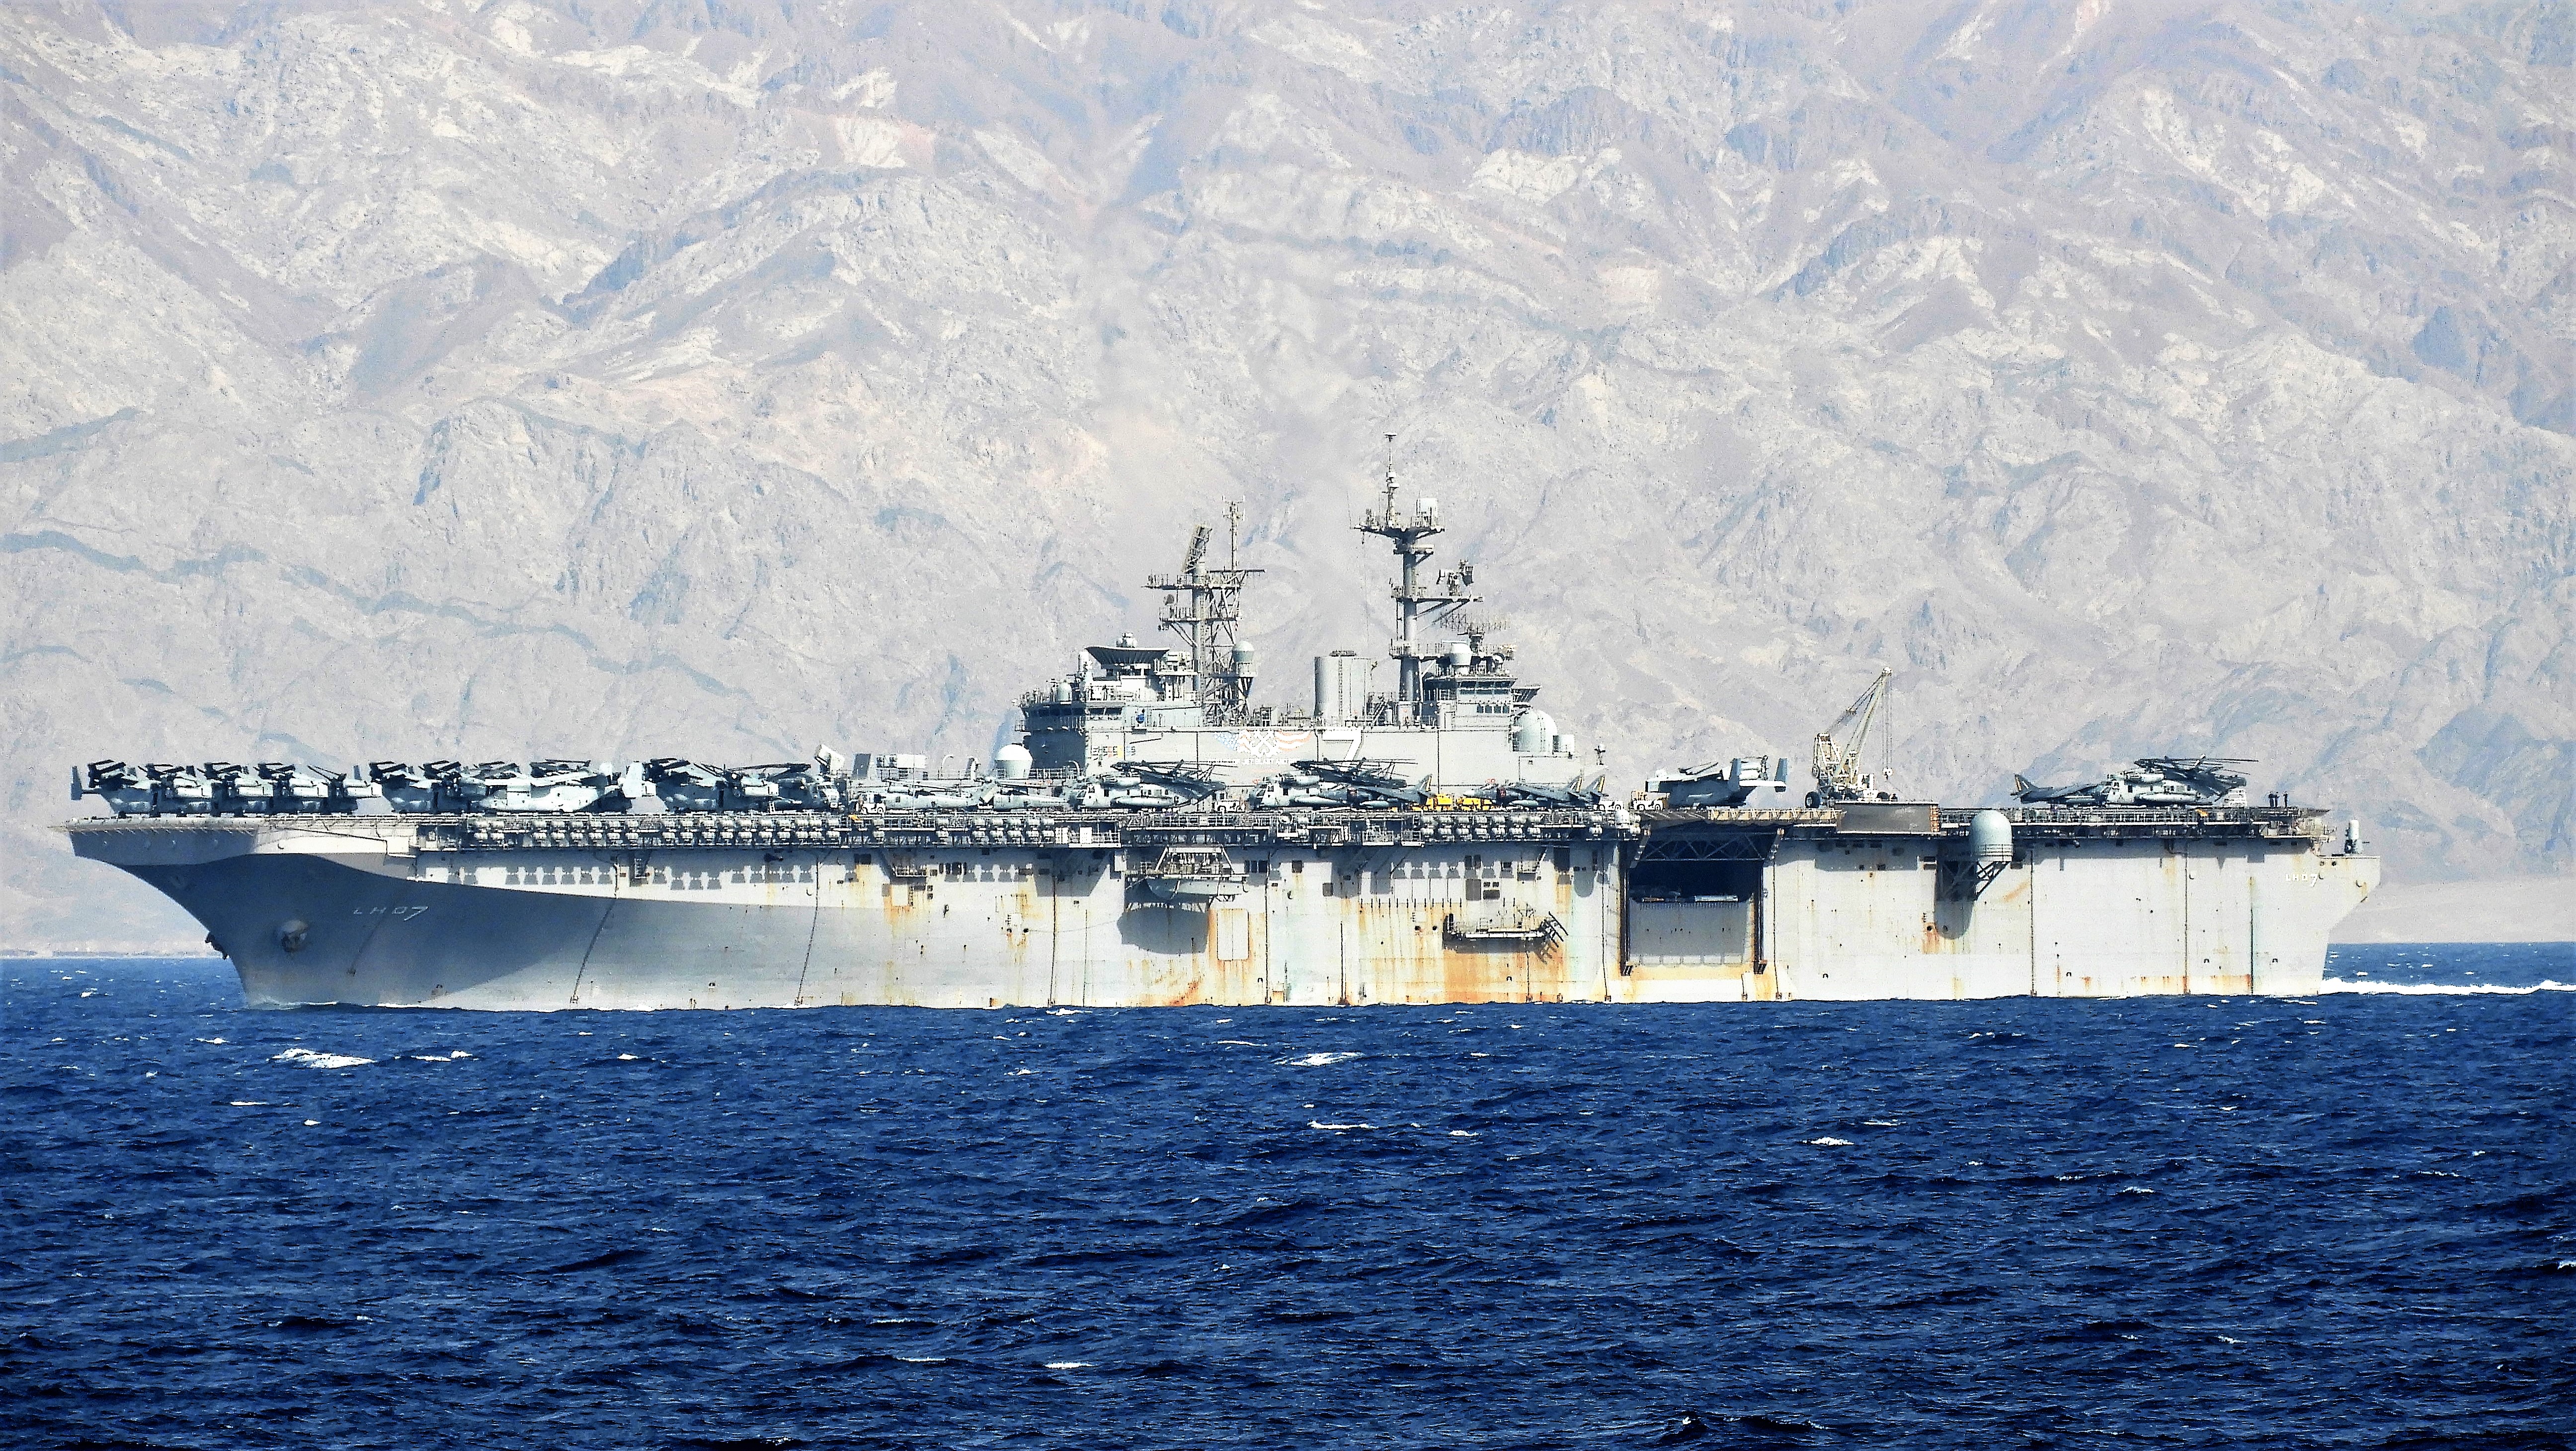 File:Hubschrauberträger USS Iwo Jima (LHD-7) 2018 im Golf von